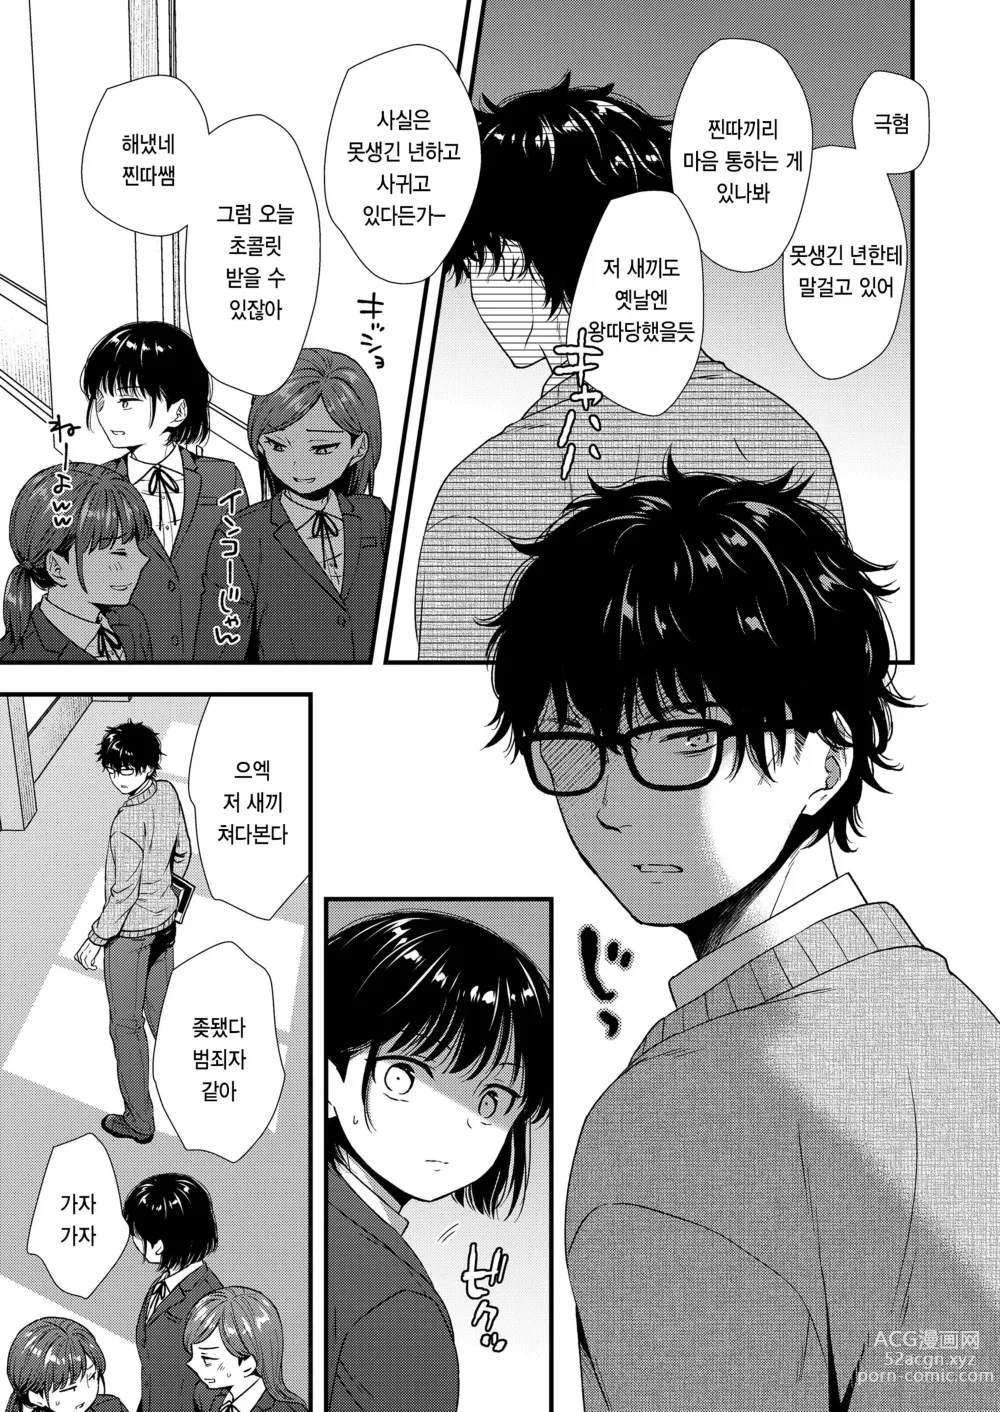 Page 3 of manga Re:Start